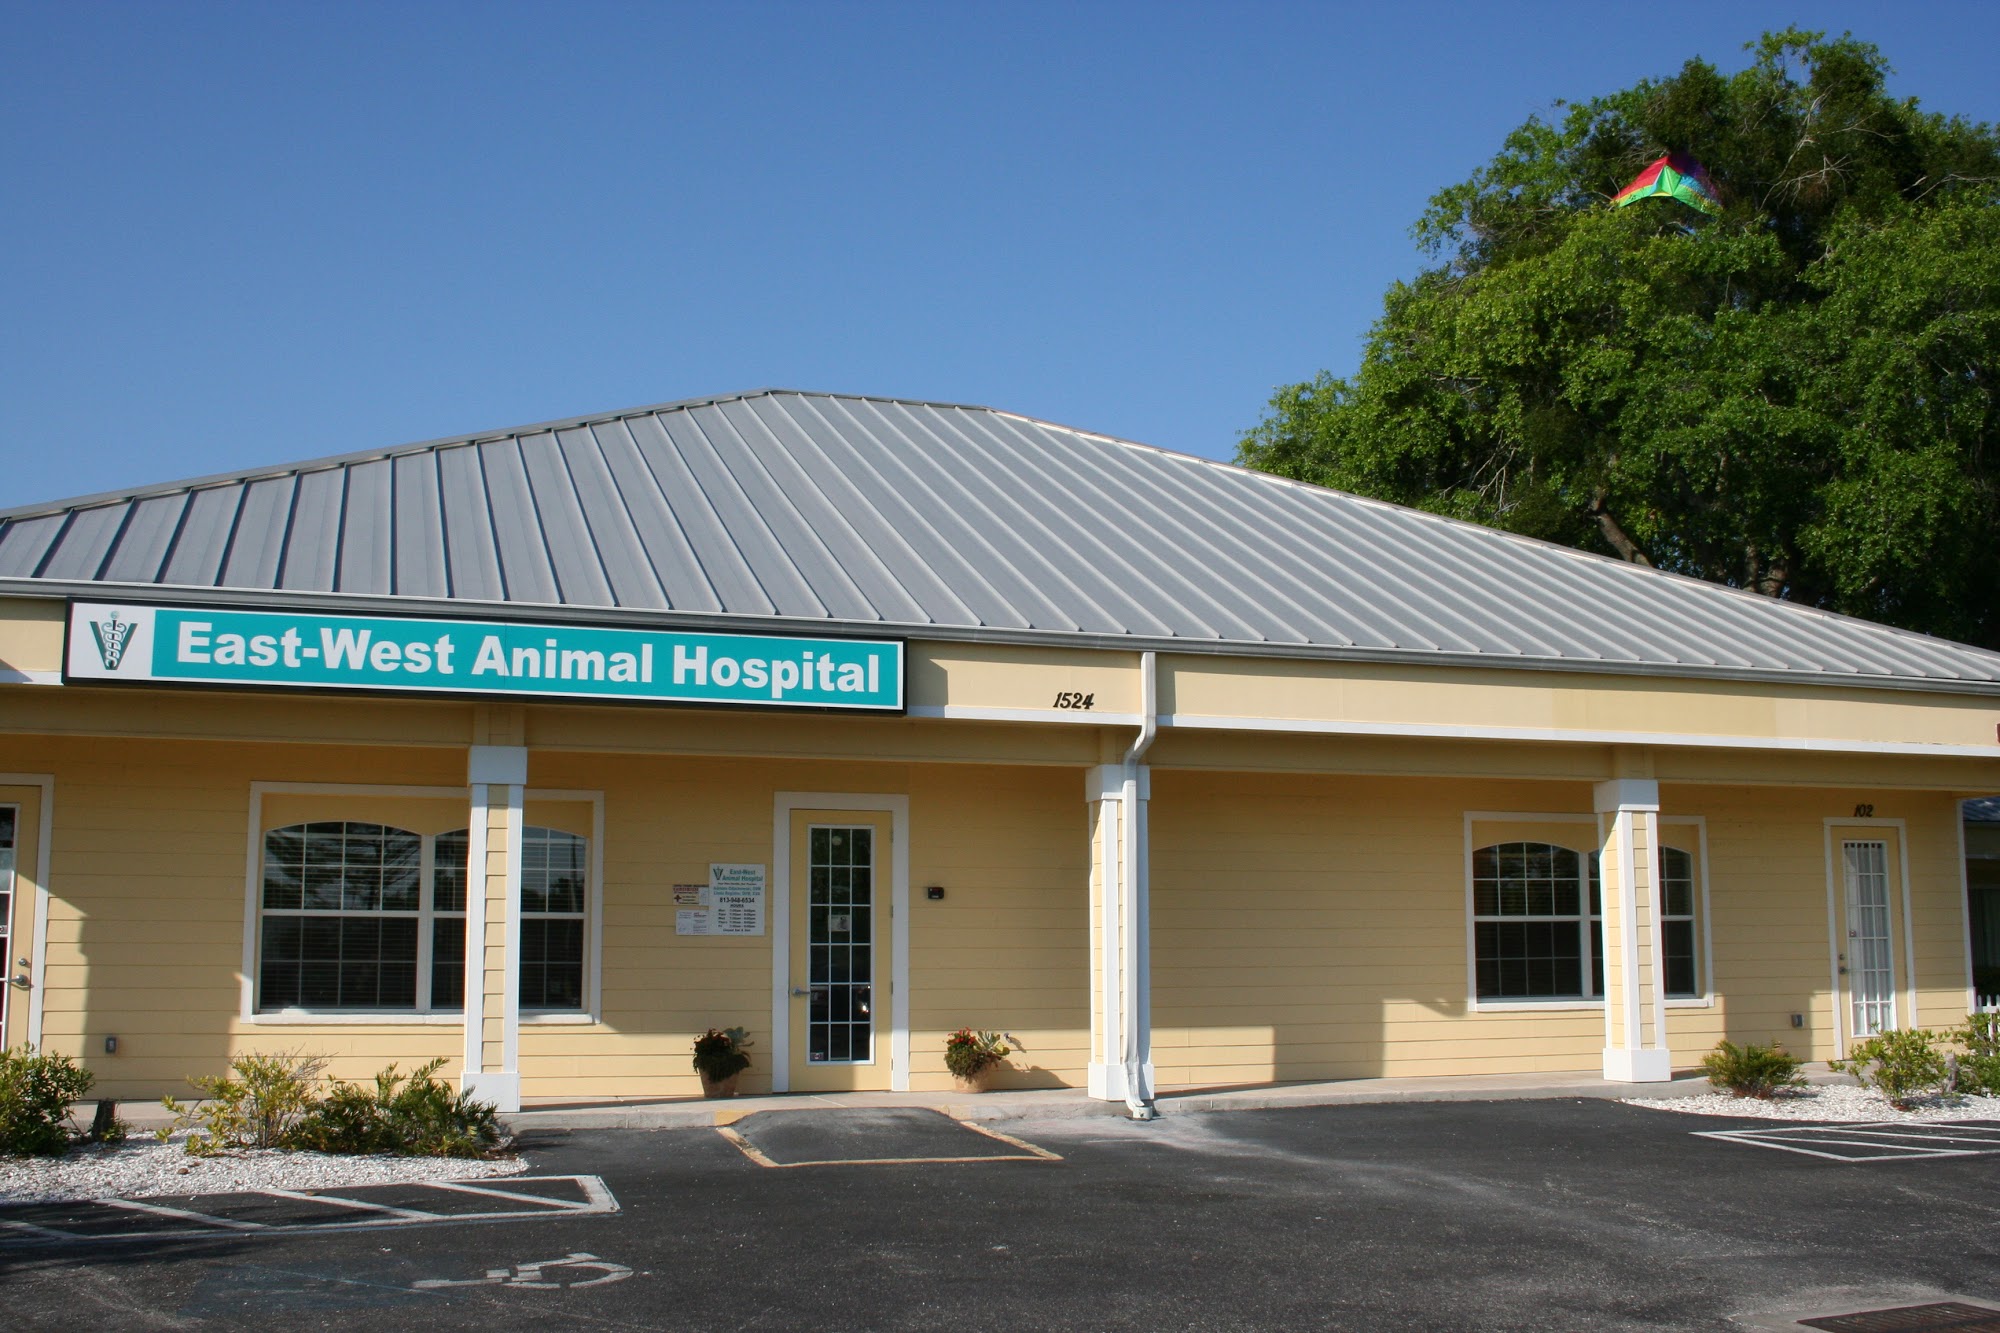 East-West Animal Hospital